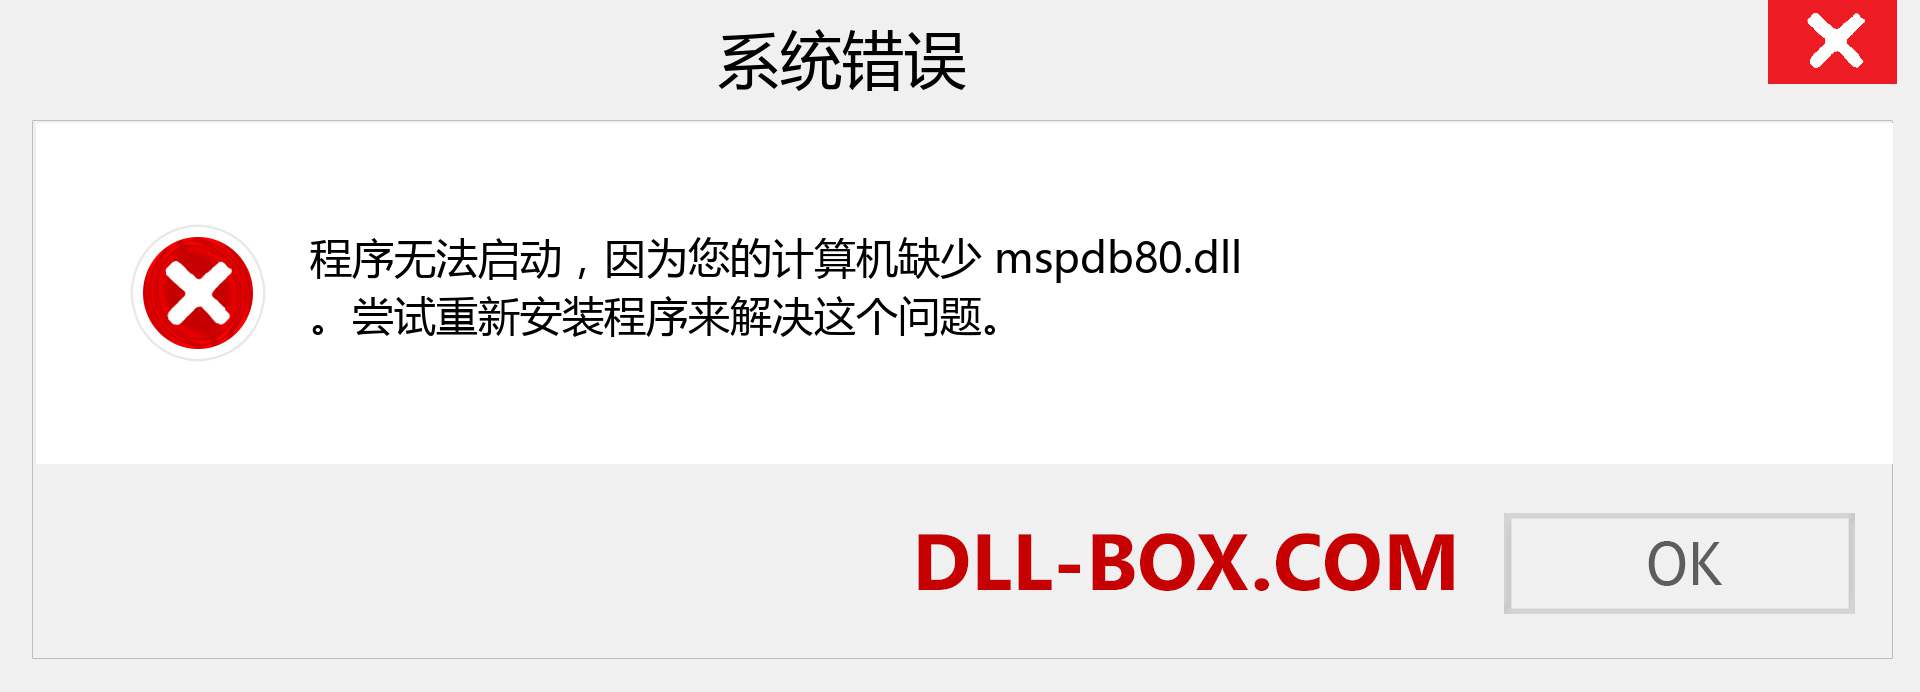 mspdb80.dll 文件丢失？。 适用于 Windows 7、8、10 的下载 - 修复 Windows、照片、图像上的 mspdb80 dll 丢失错误